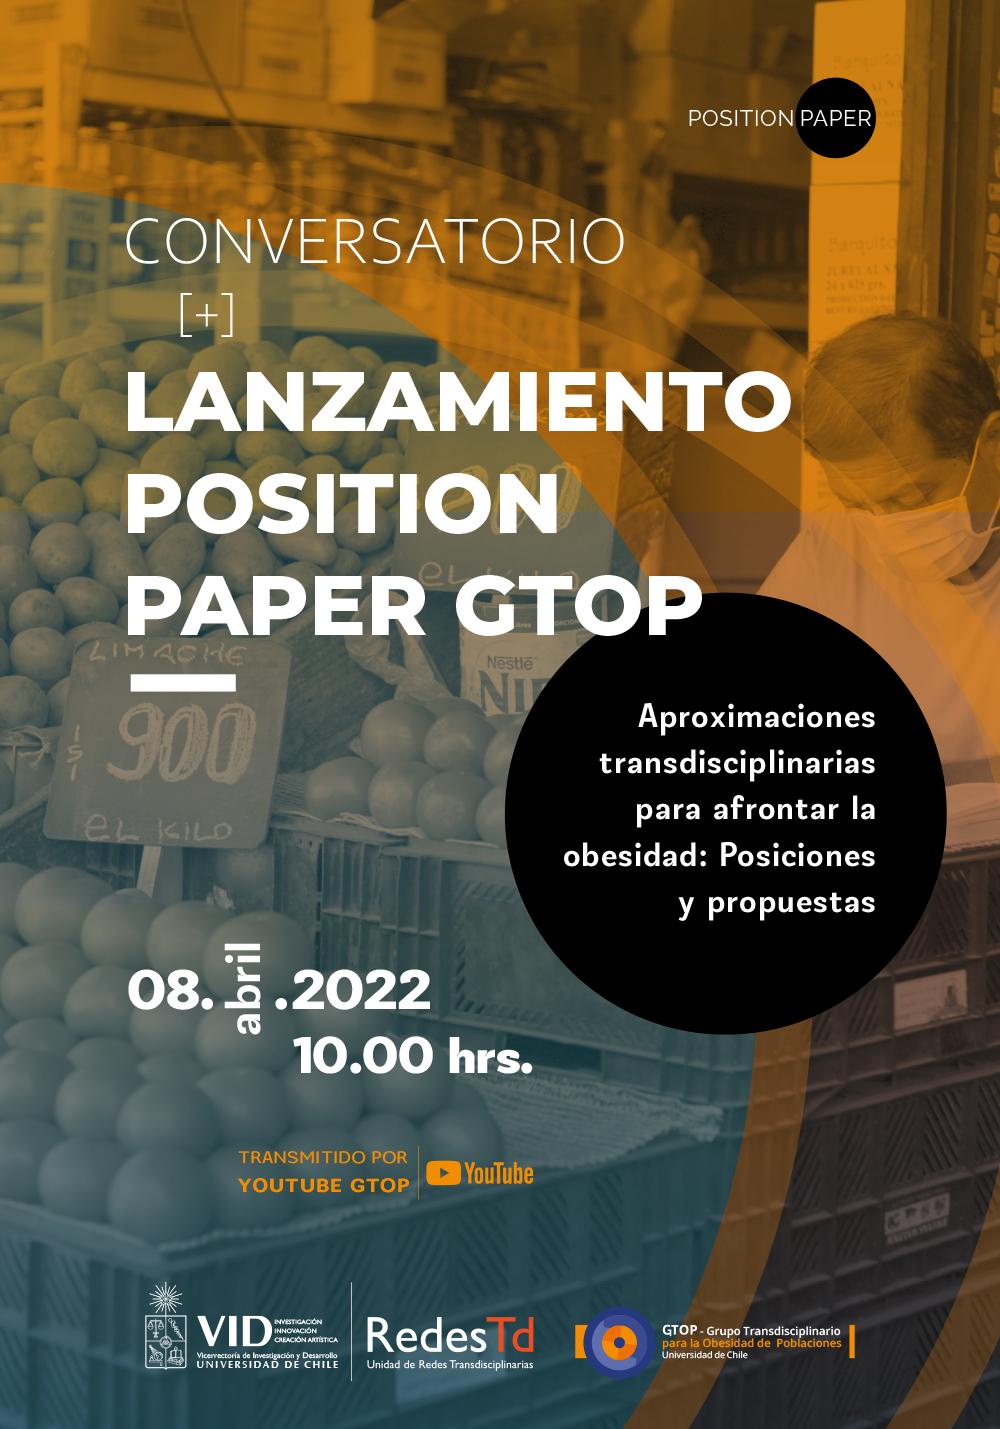 Conversatorio y Lanzamiento Position Paper GTOP